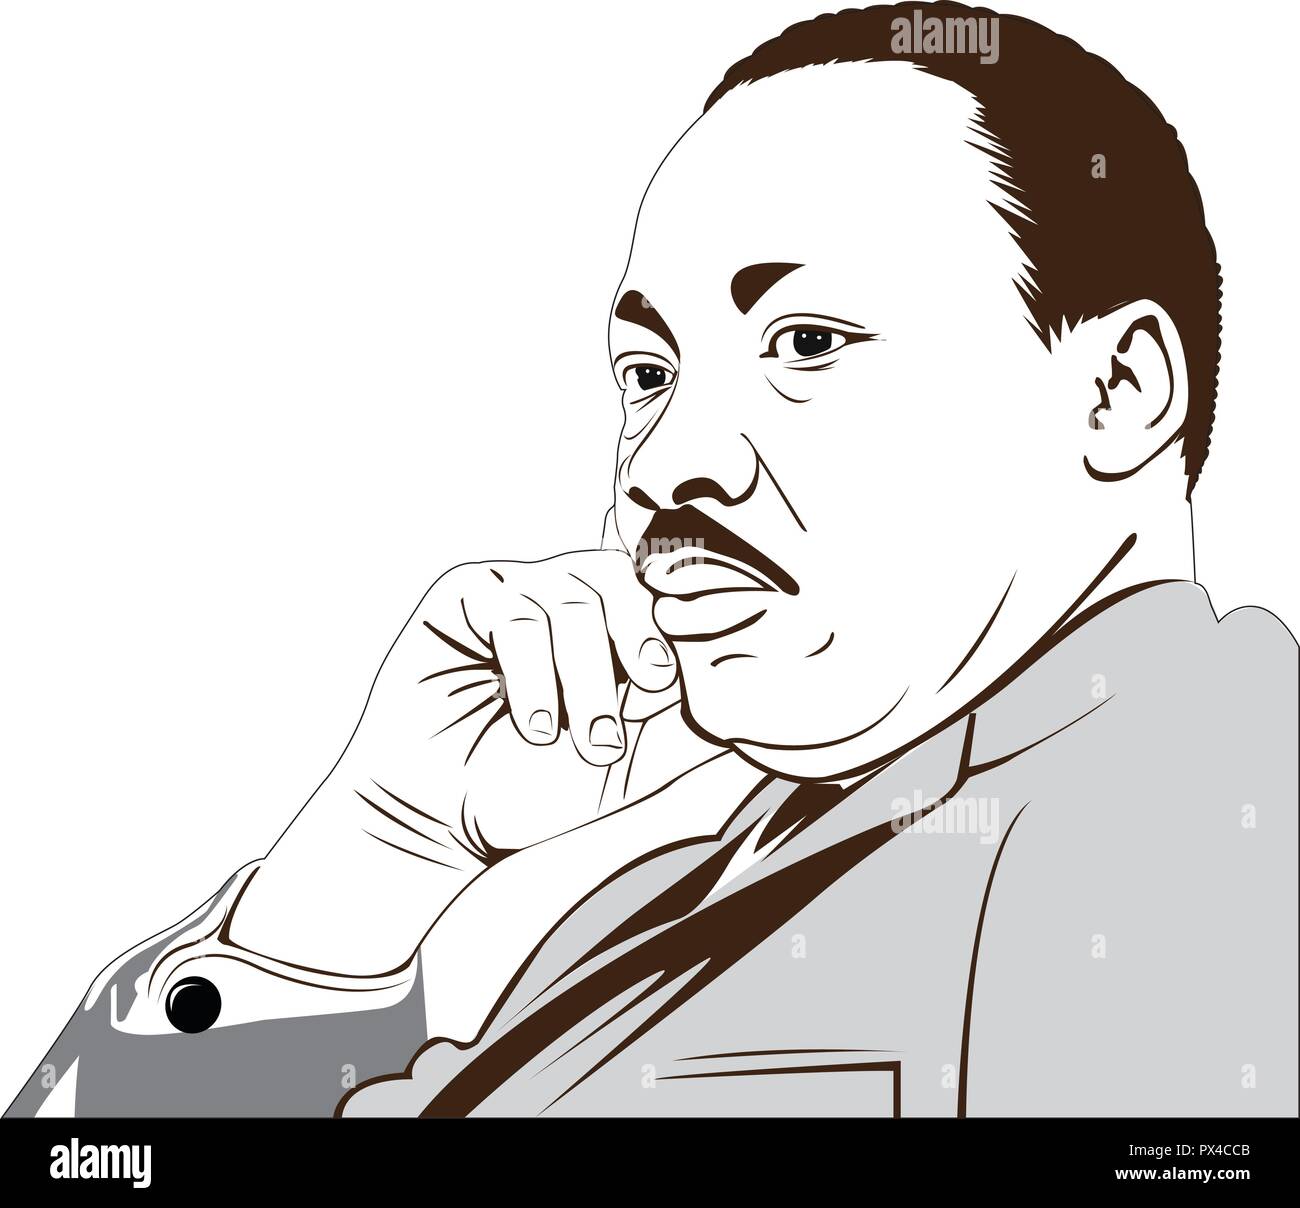 Martin Luther King (1929 - 1968) un Américain. où il a prononcé son célèbre "J'ai fait un rêve" discours. image vecteur de Martin Luther King. Illustration de Vecteur